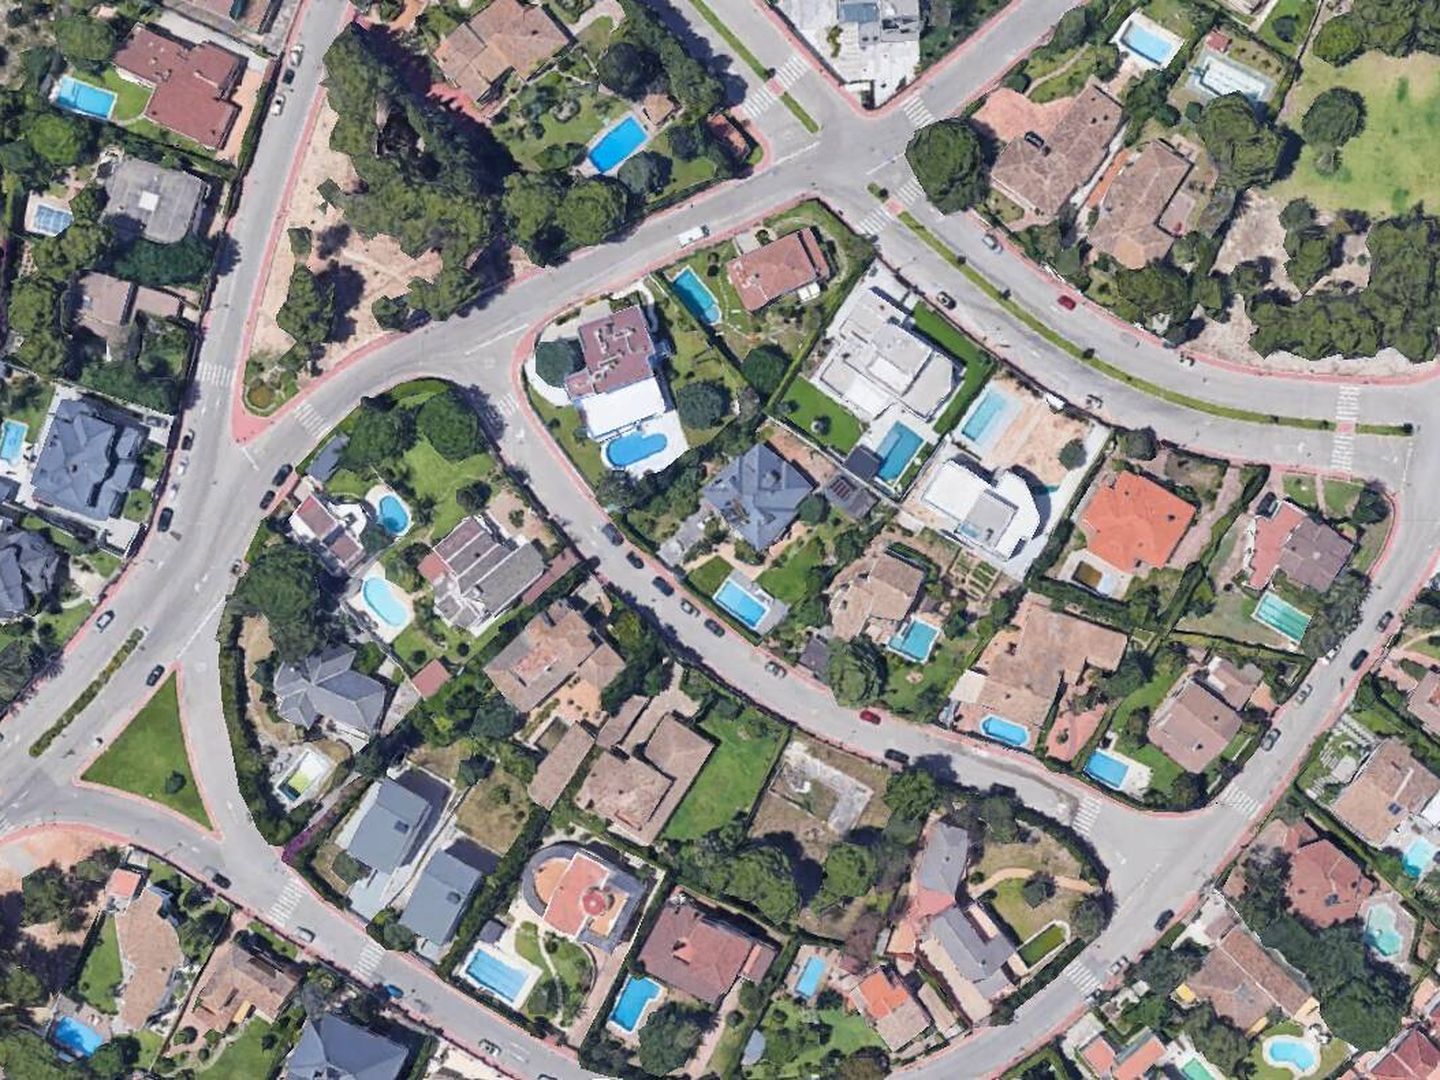 Vista aérea de la urbanización en la que está el chalé de Pedro Cortés. (Google Earth)